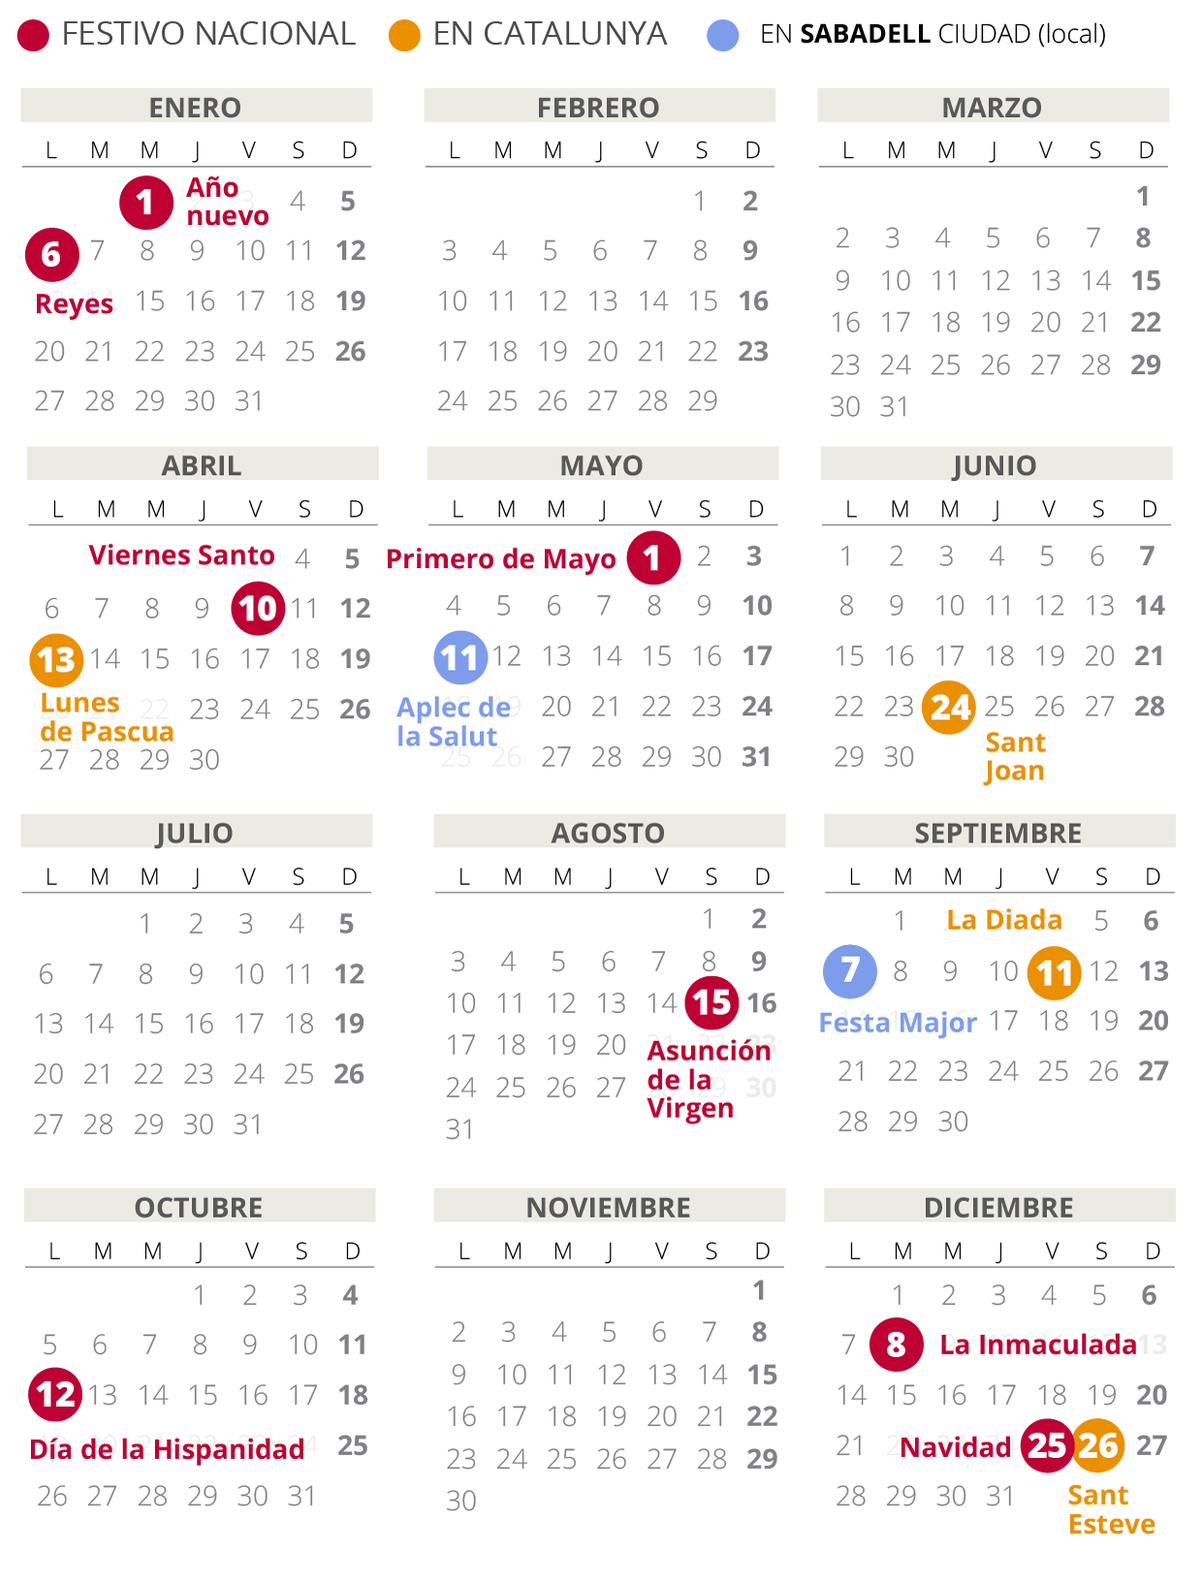 Calendario laboral de Sabadell del 2020.